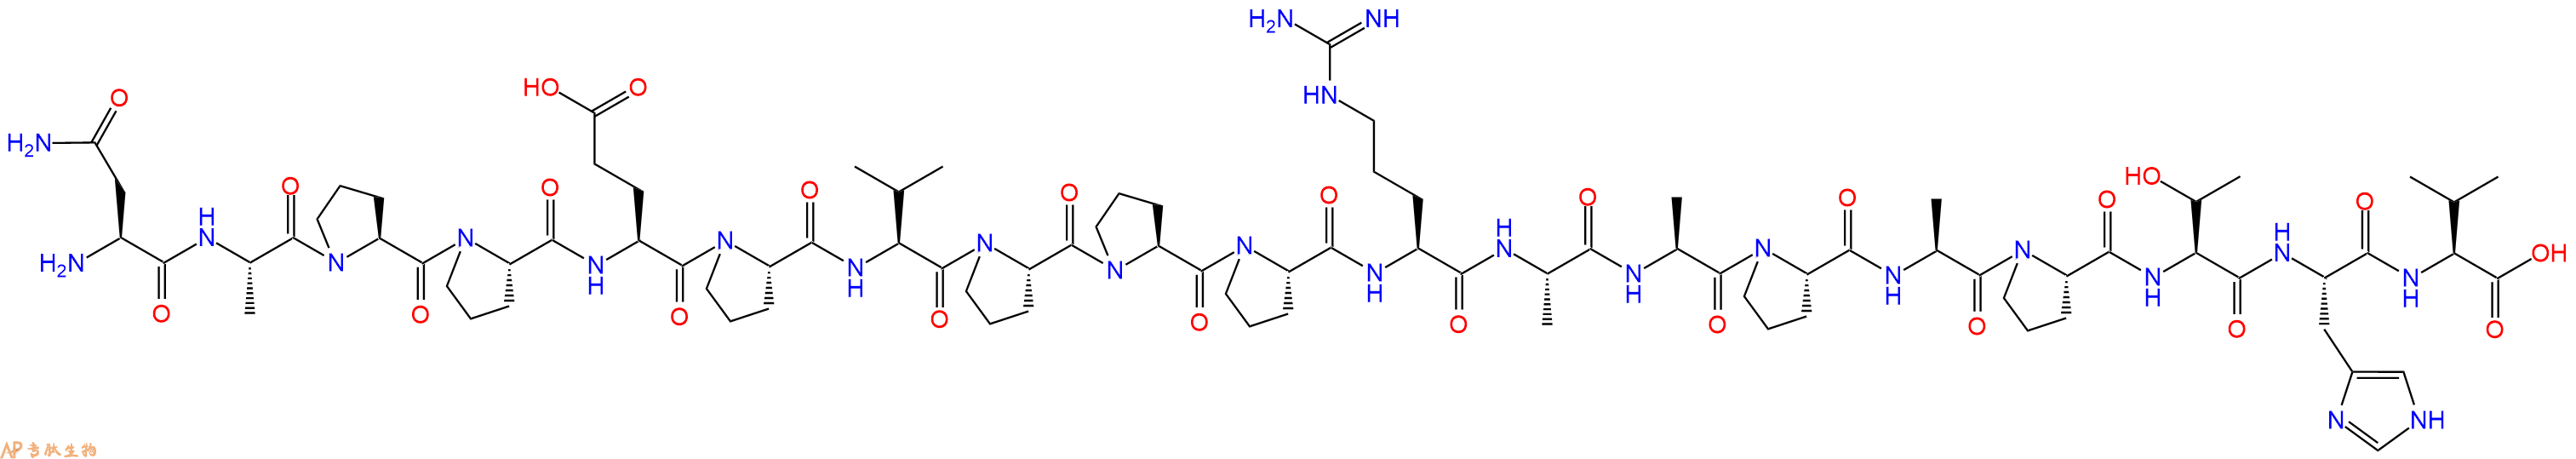 专肽生物产品H2N-Asn-Ala-Pro-Pro-Glu-Pro-Val-Pro-Pro-Pro-Arg-Al